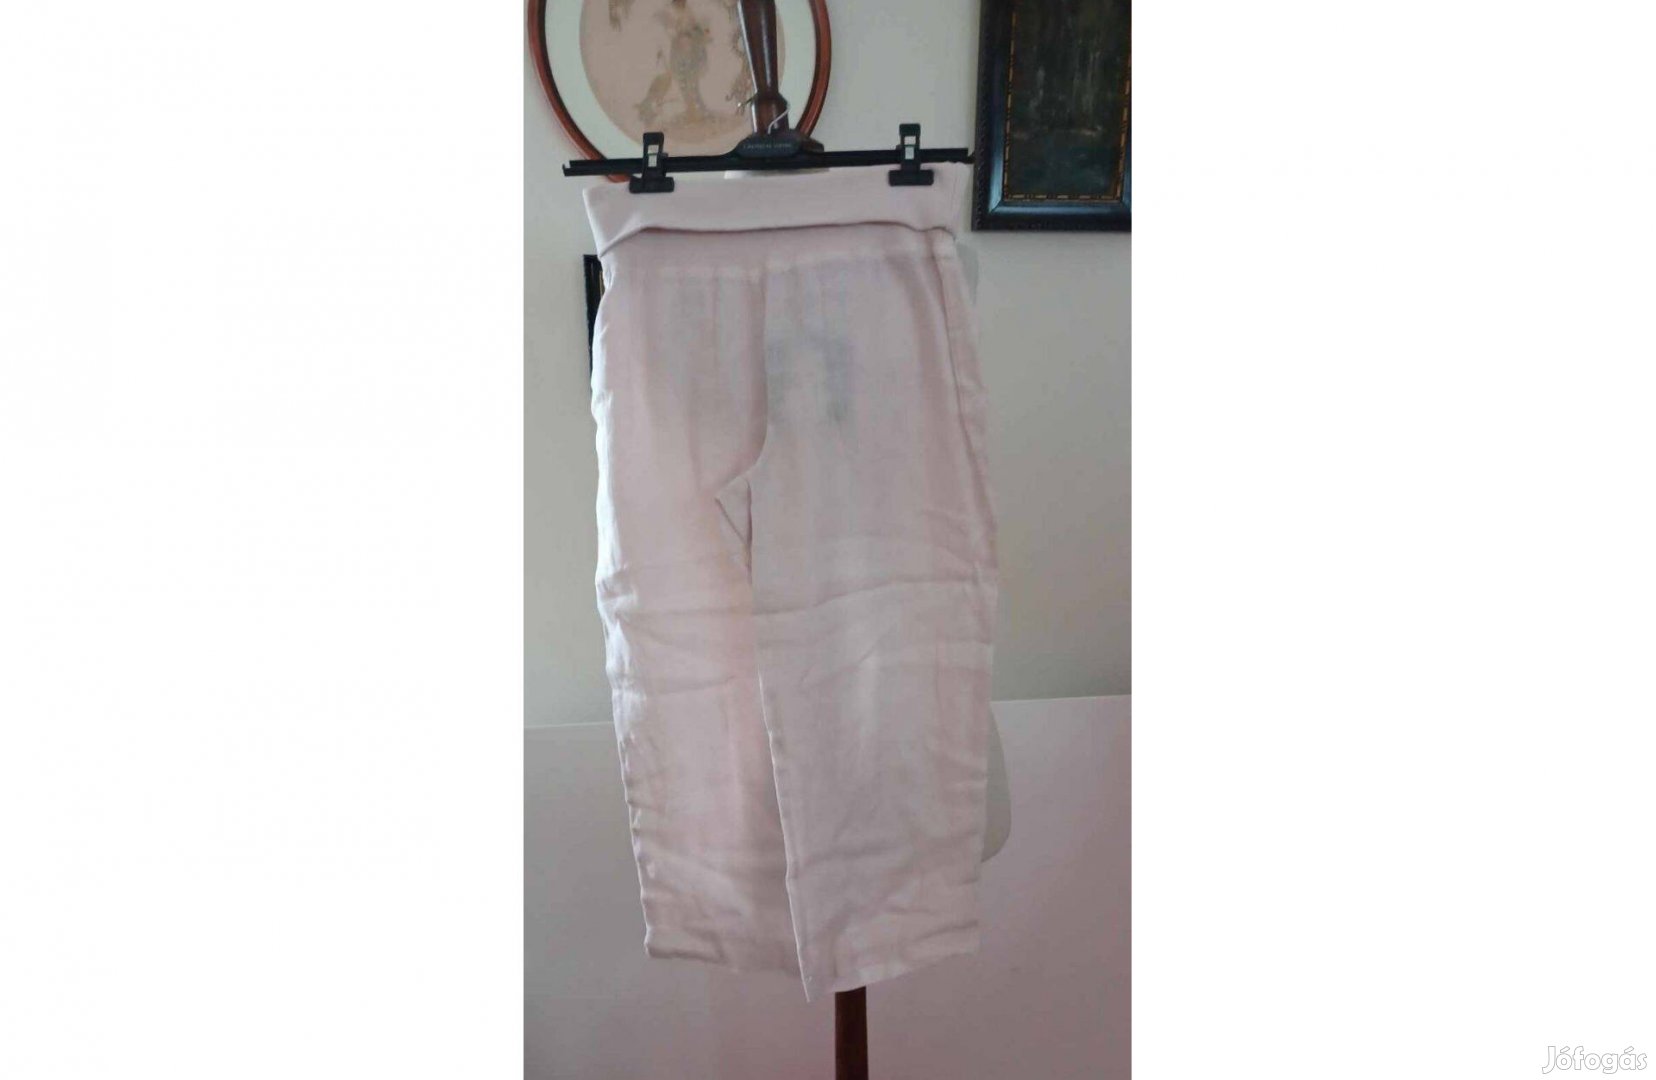 Lauren Vidal halvány rózsaszín gumis derekú, rövid állású nadrág eladó